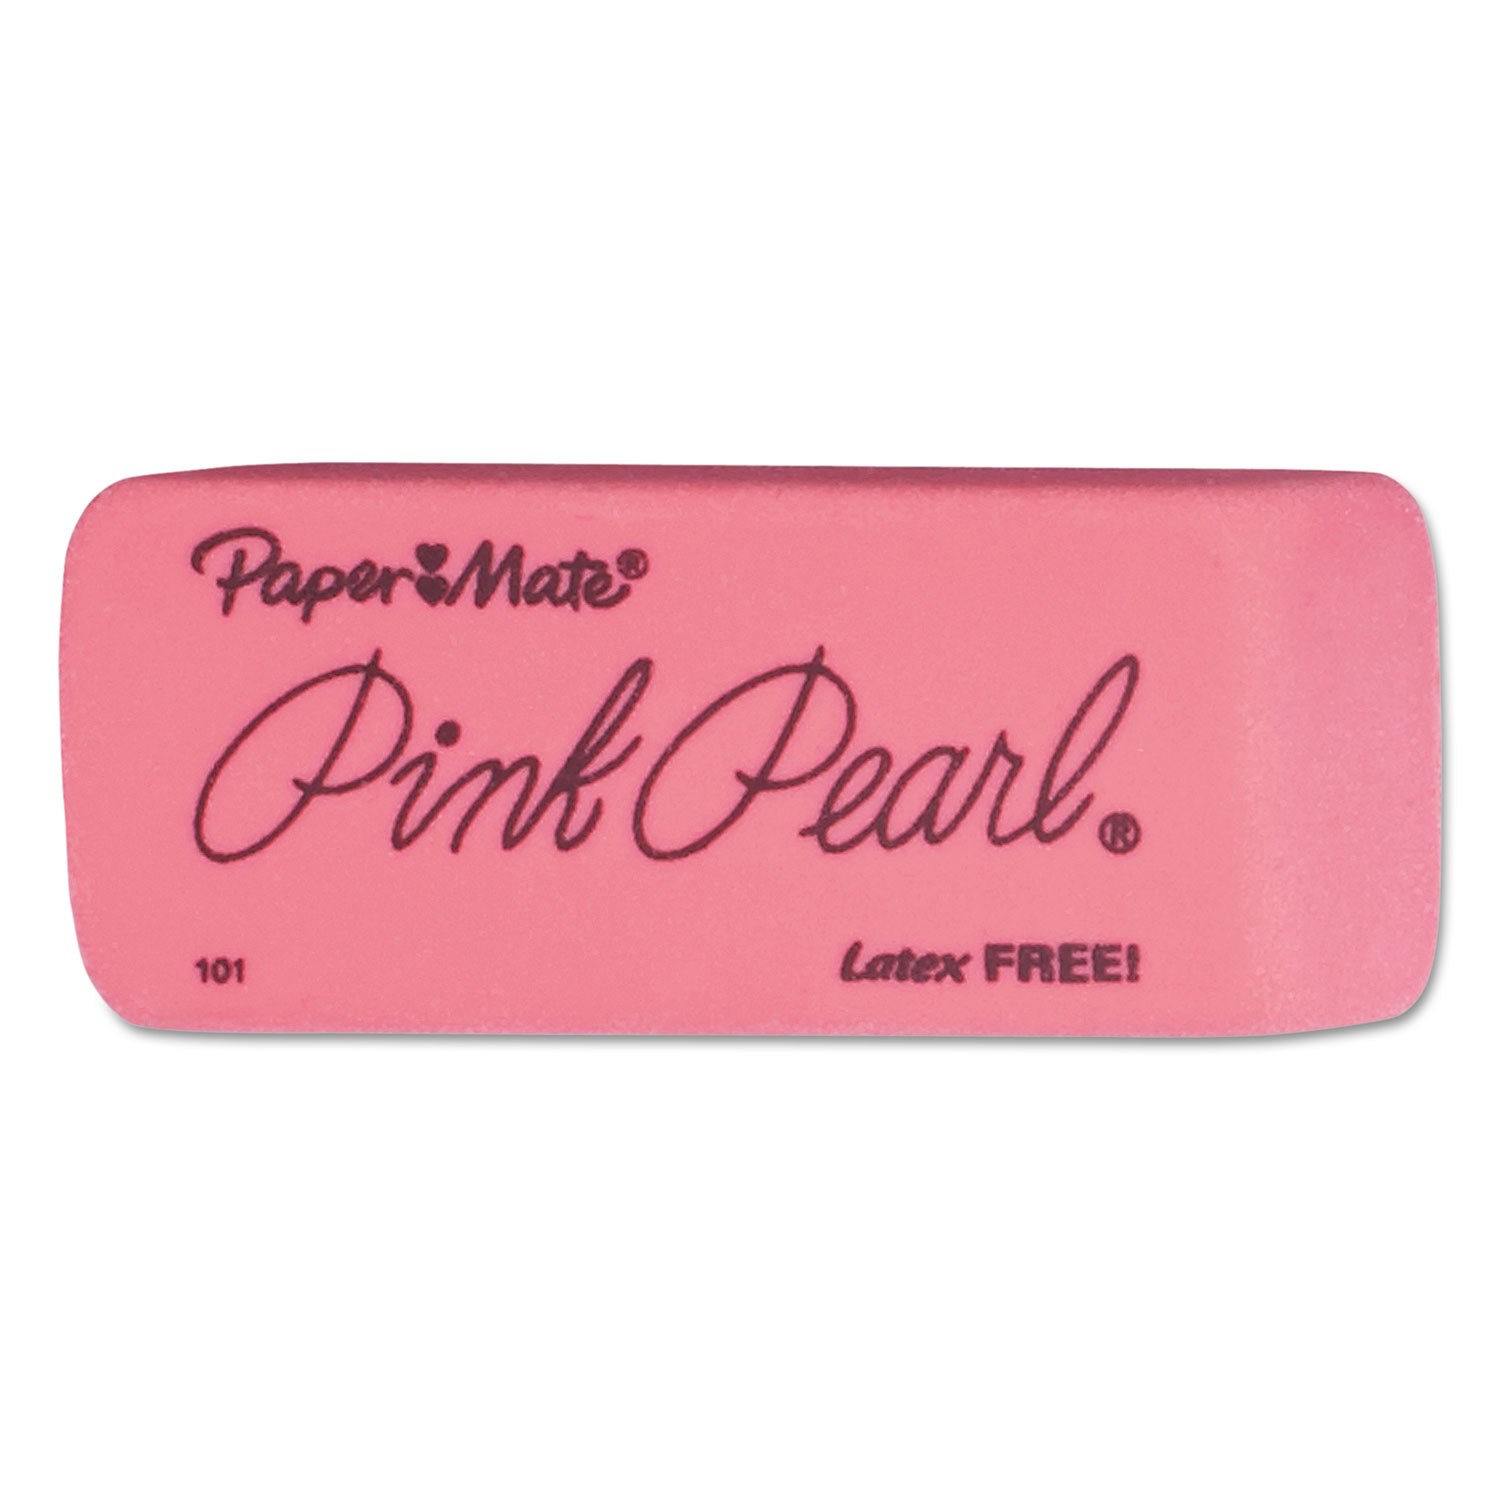  Paper Mate 70521 Pink Pearl Eraser, Rectangular, Large, Elastomer, 12/Box (PAP70521) 